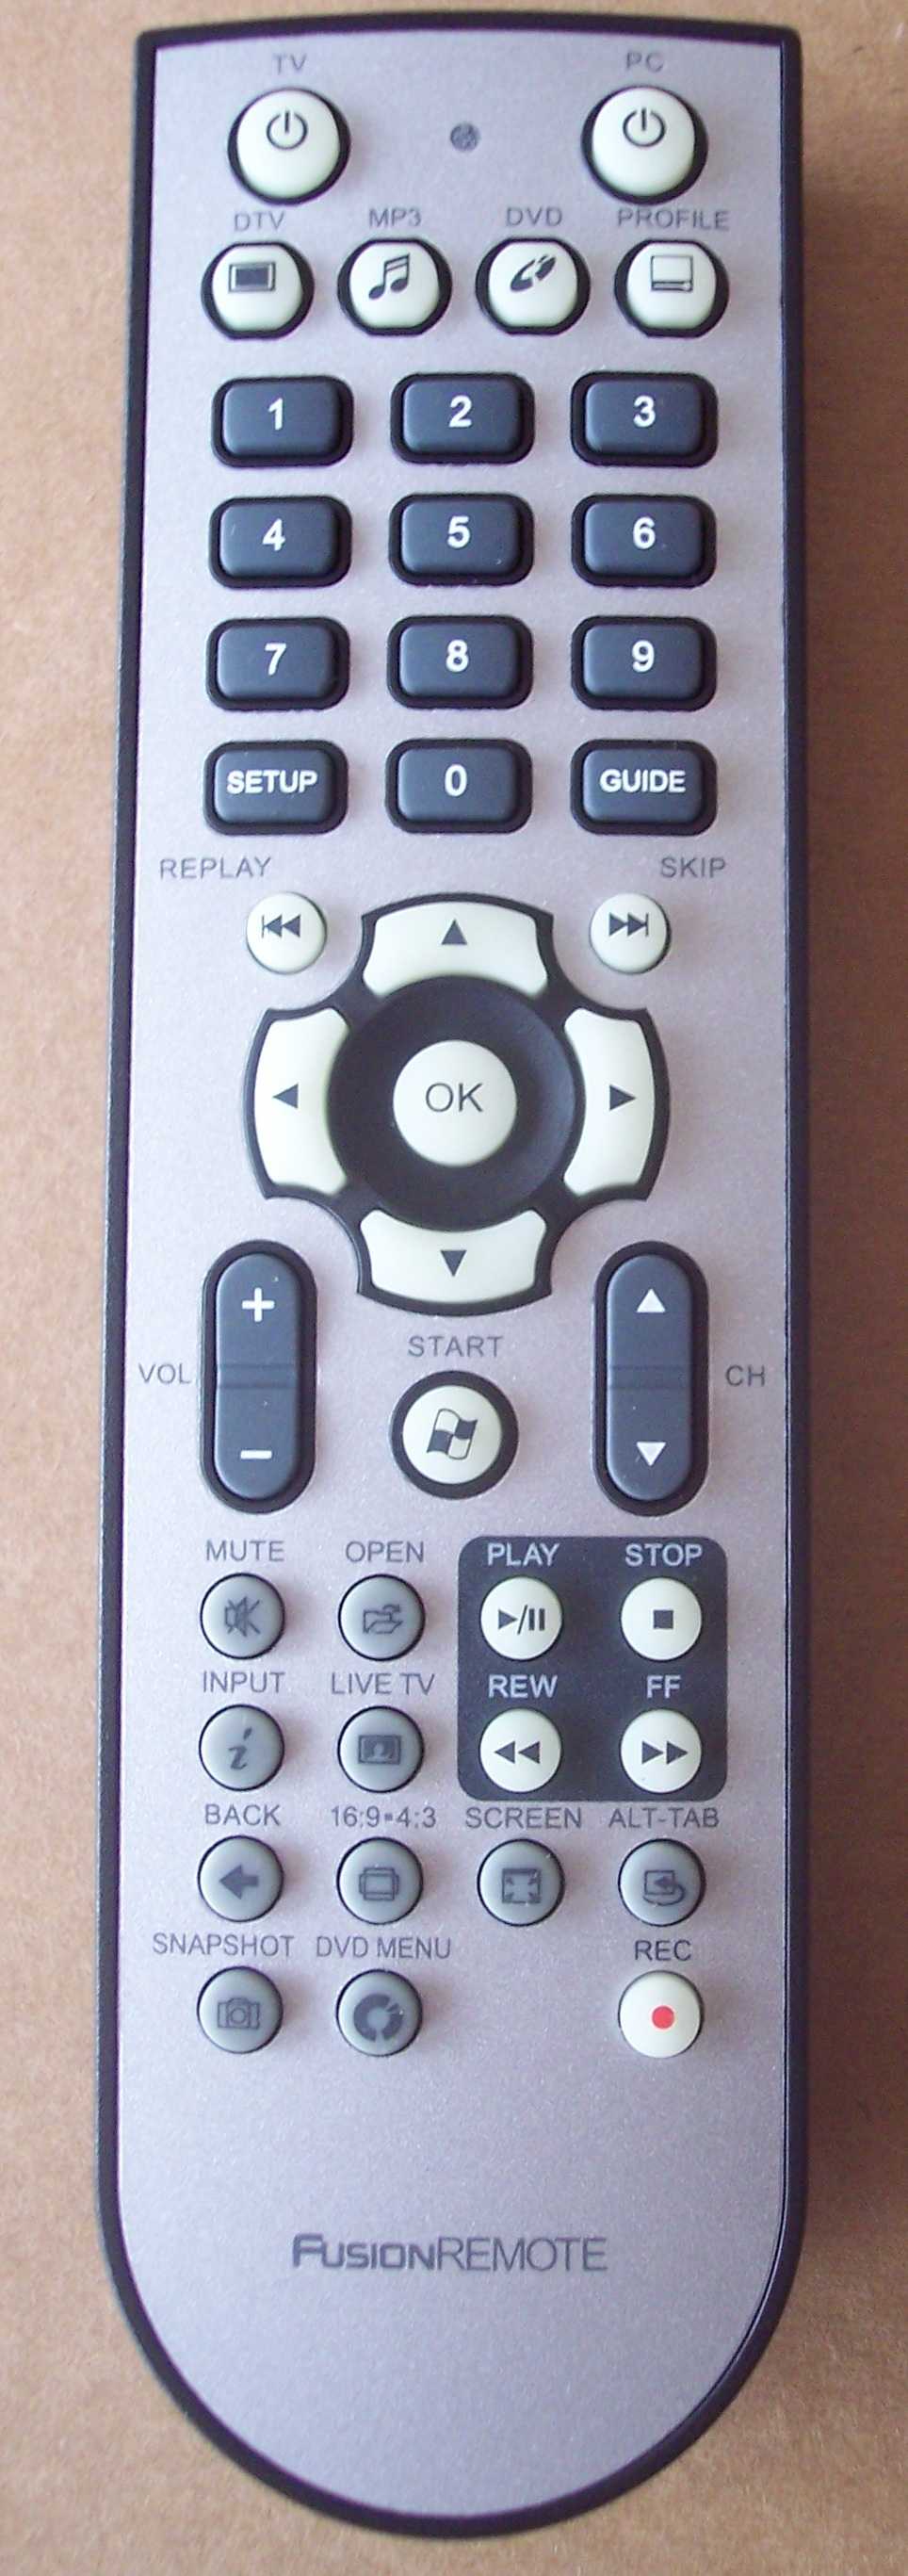 Supplied remote control.